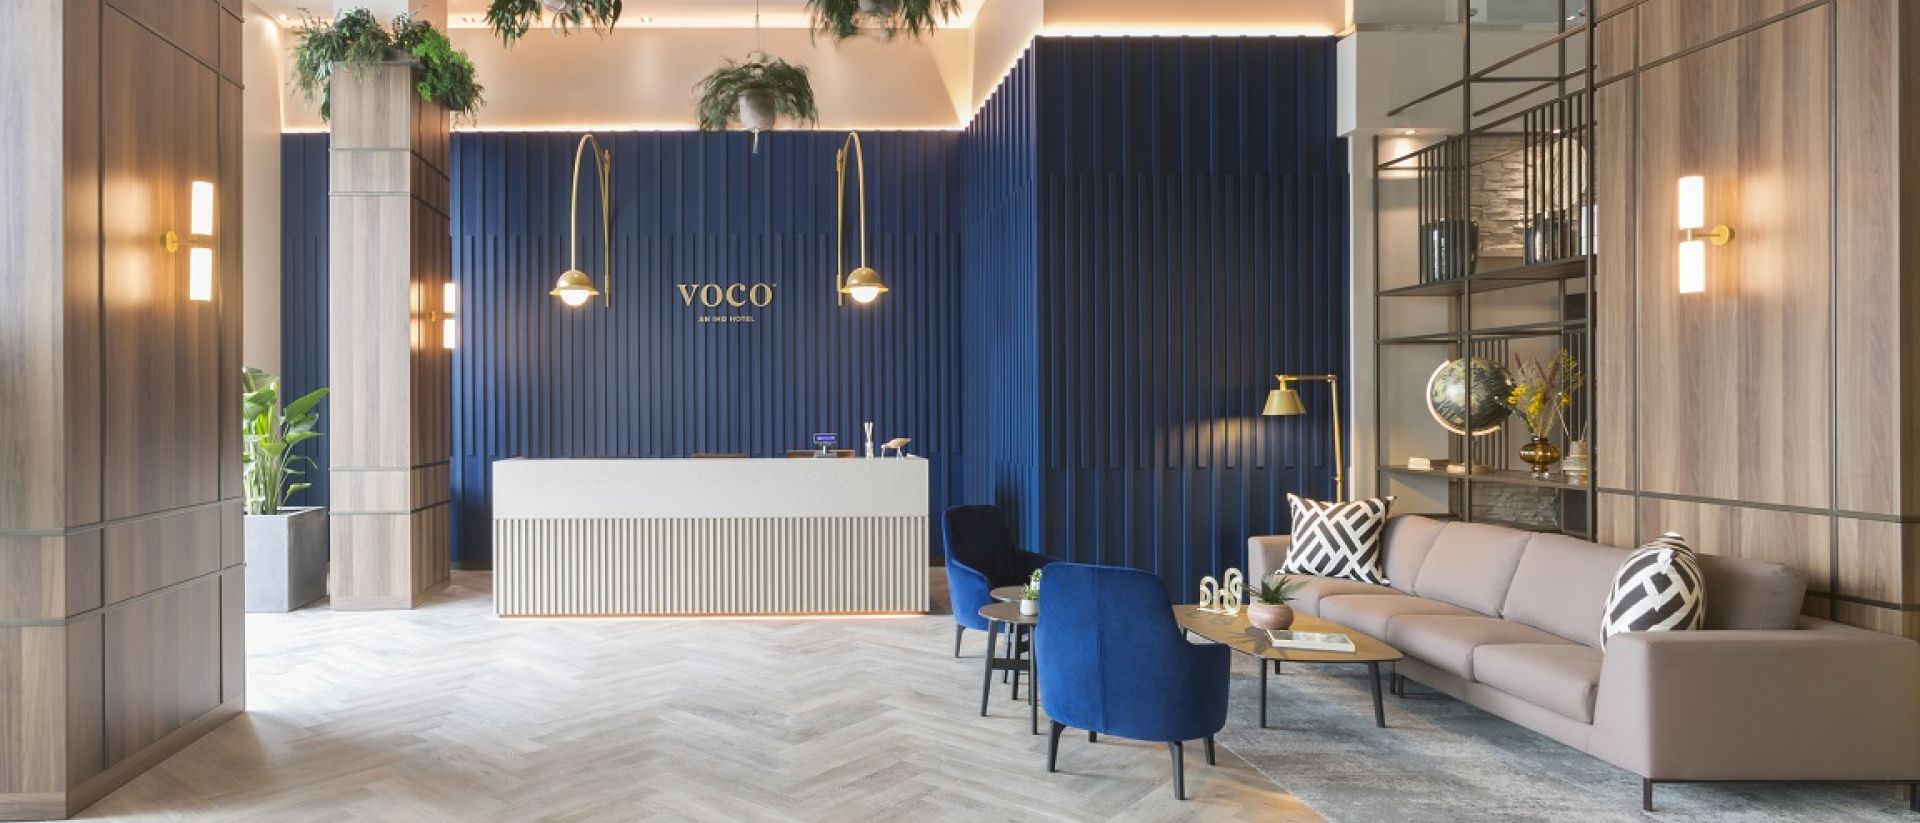 Wogo Hotel apre il secondo albergo in Italia